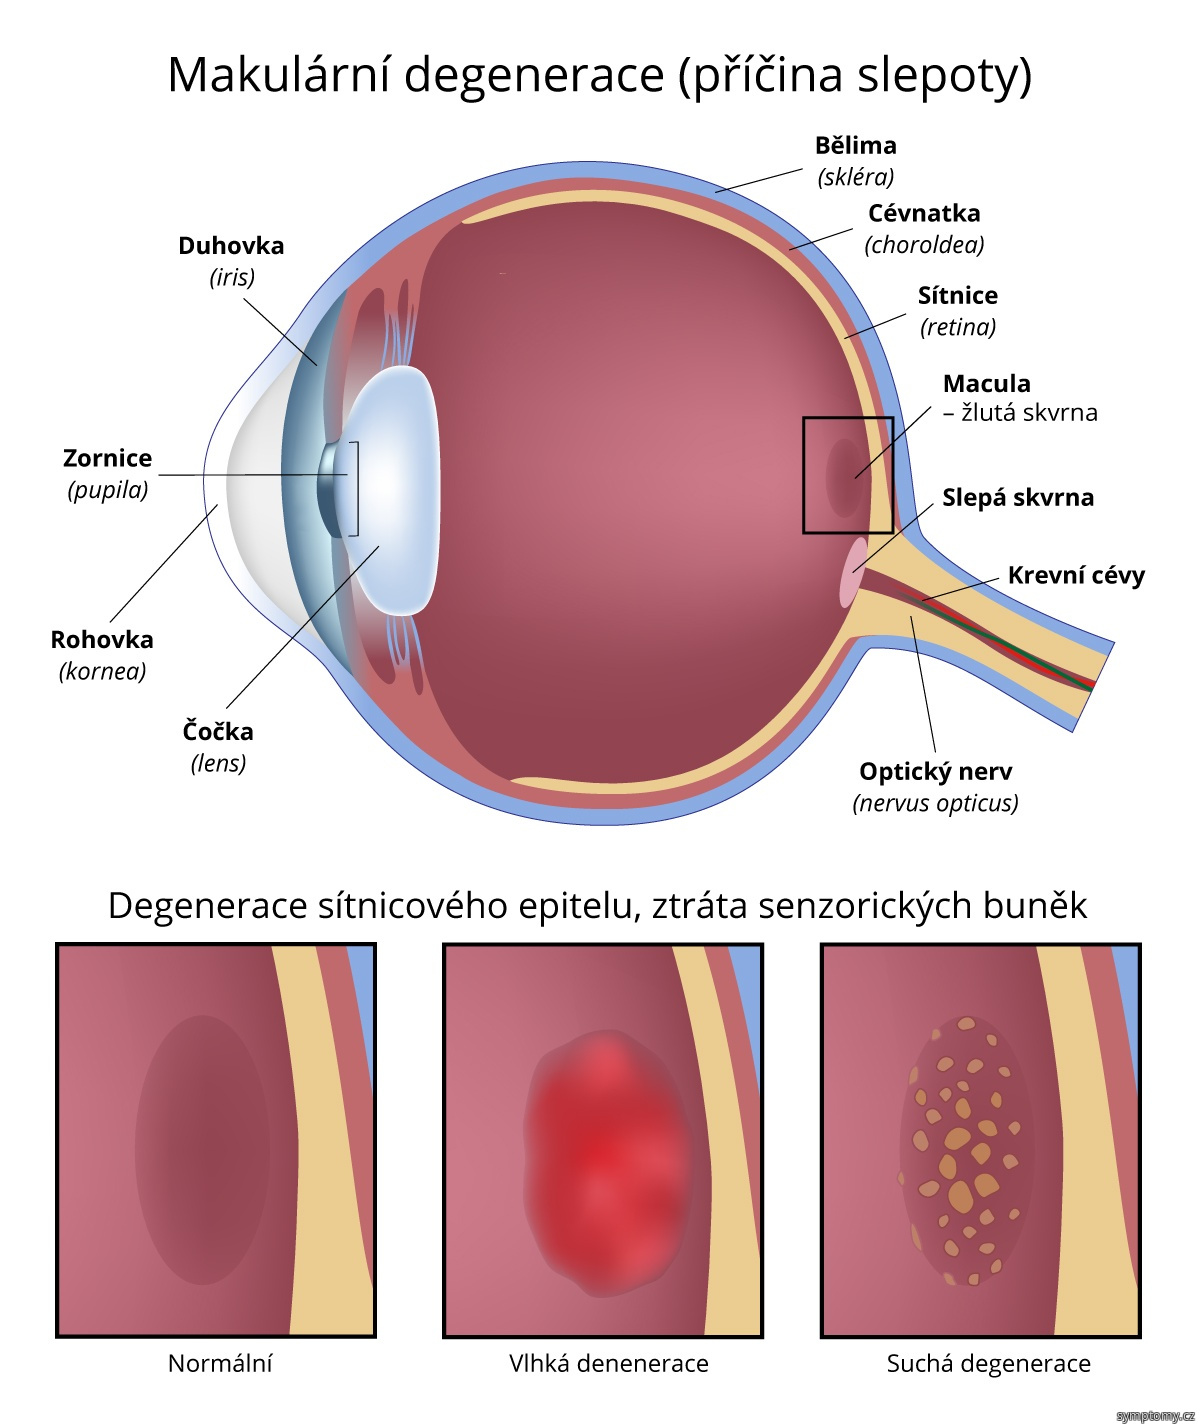 Makulární degenerace - příčina-slepoty